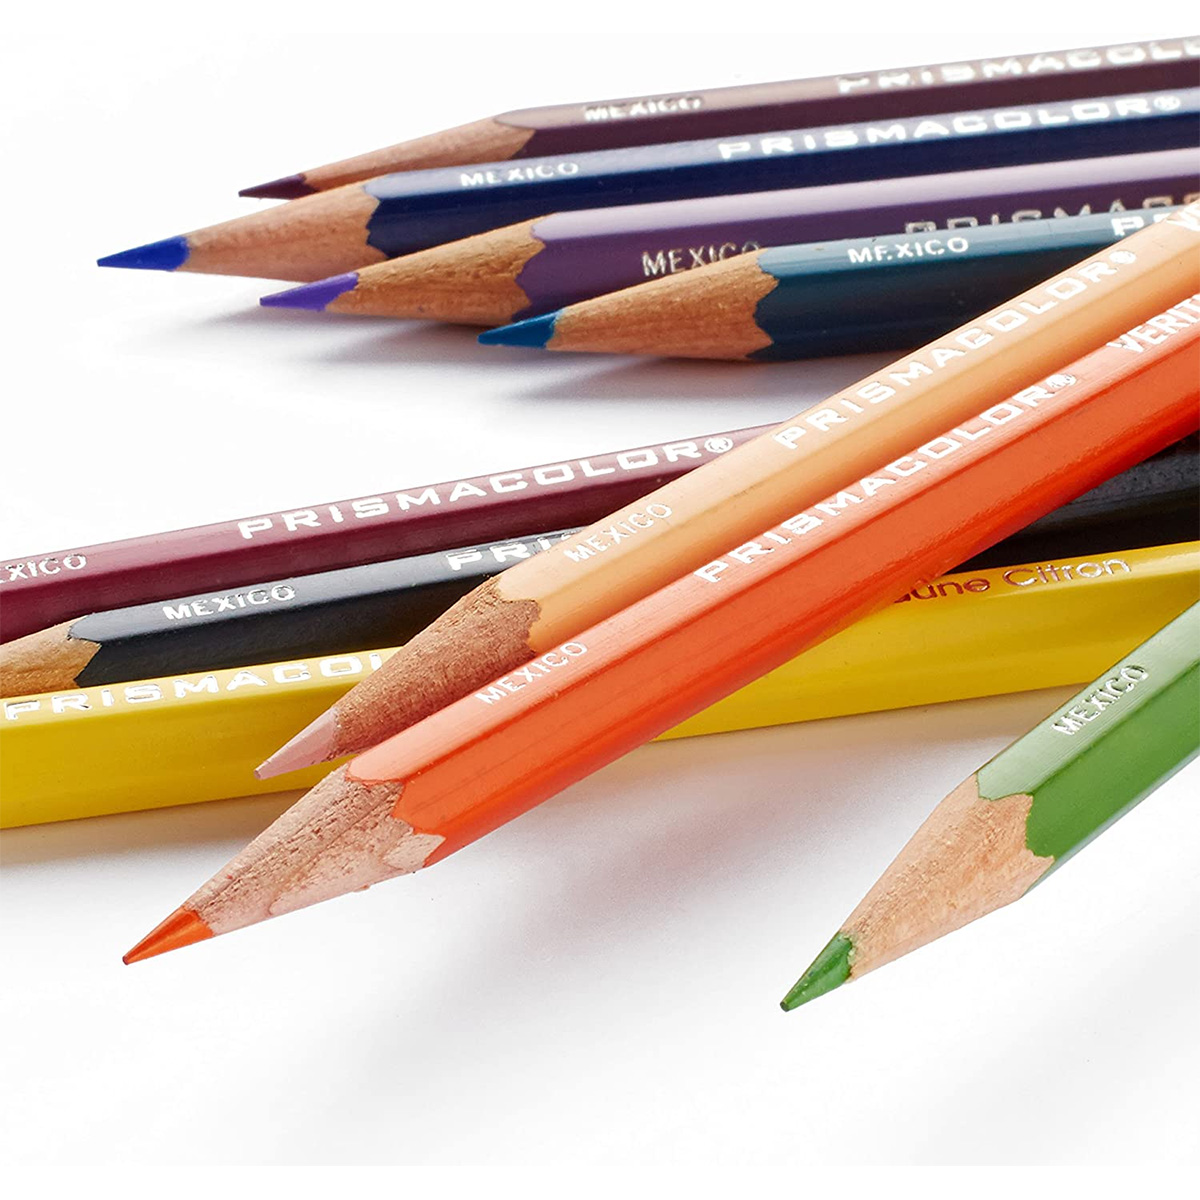 Prismacolor Premier Verithin Colored Pencils 24 Set